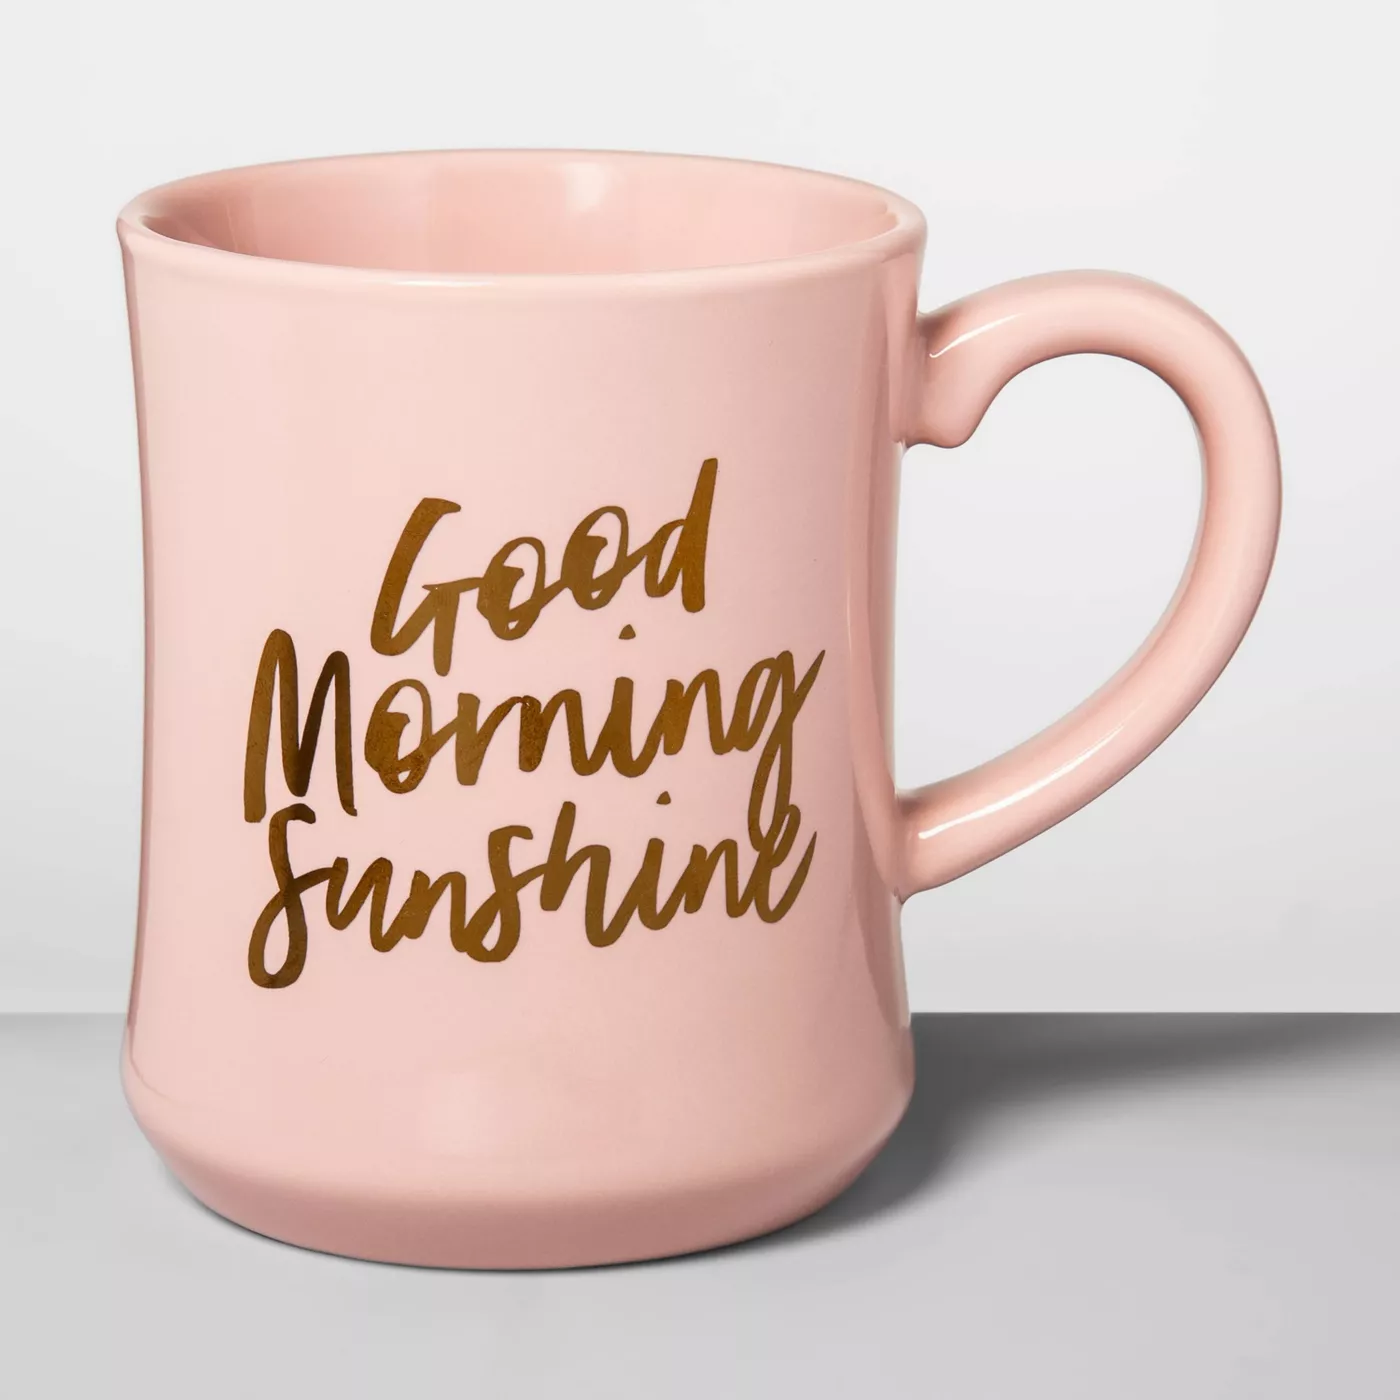 15oz Stoneware Good Morning Diner Mug Light Pink - Opalhouse™ - image 1 of 1